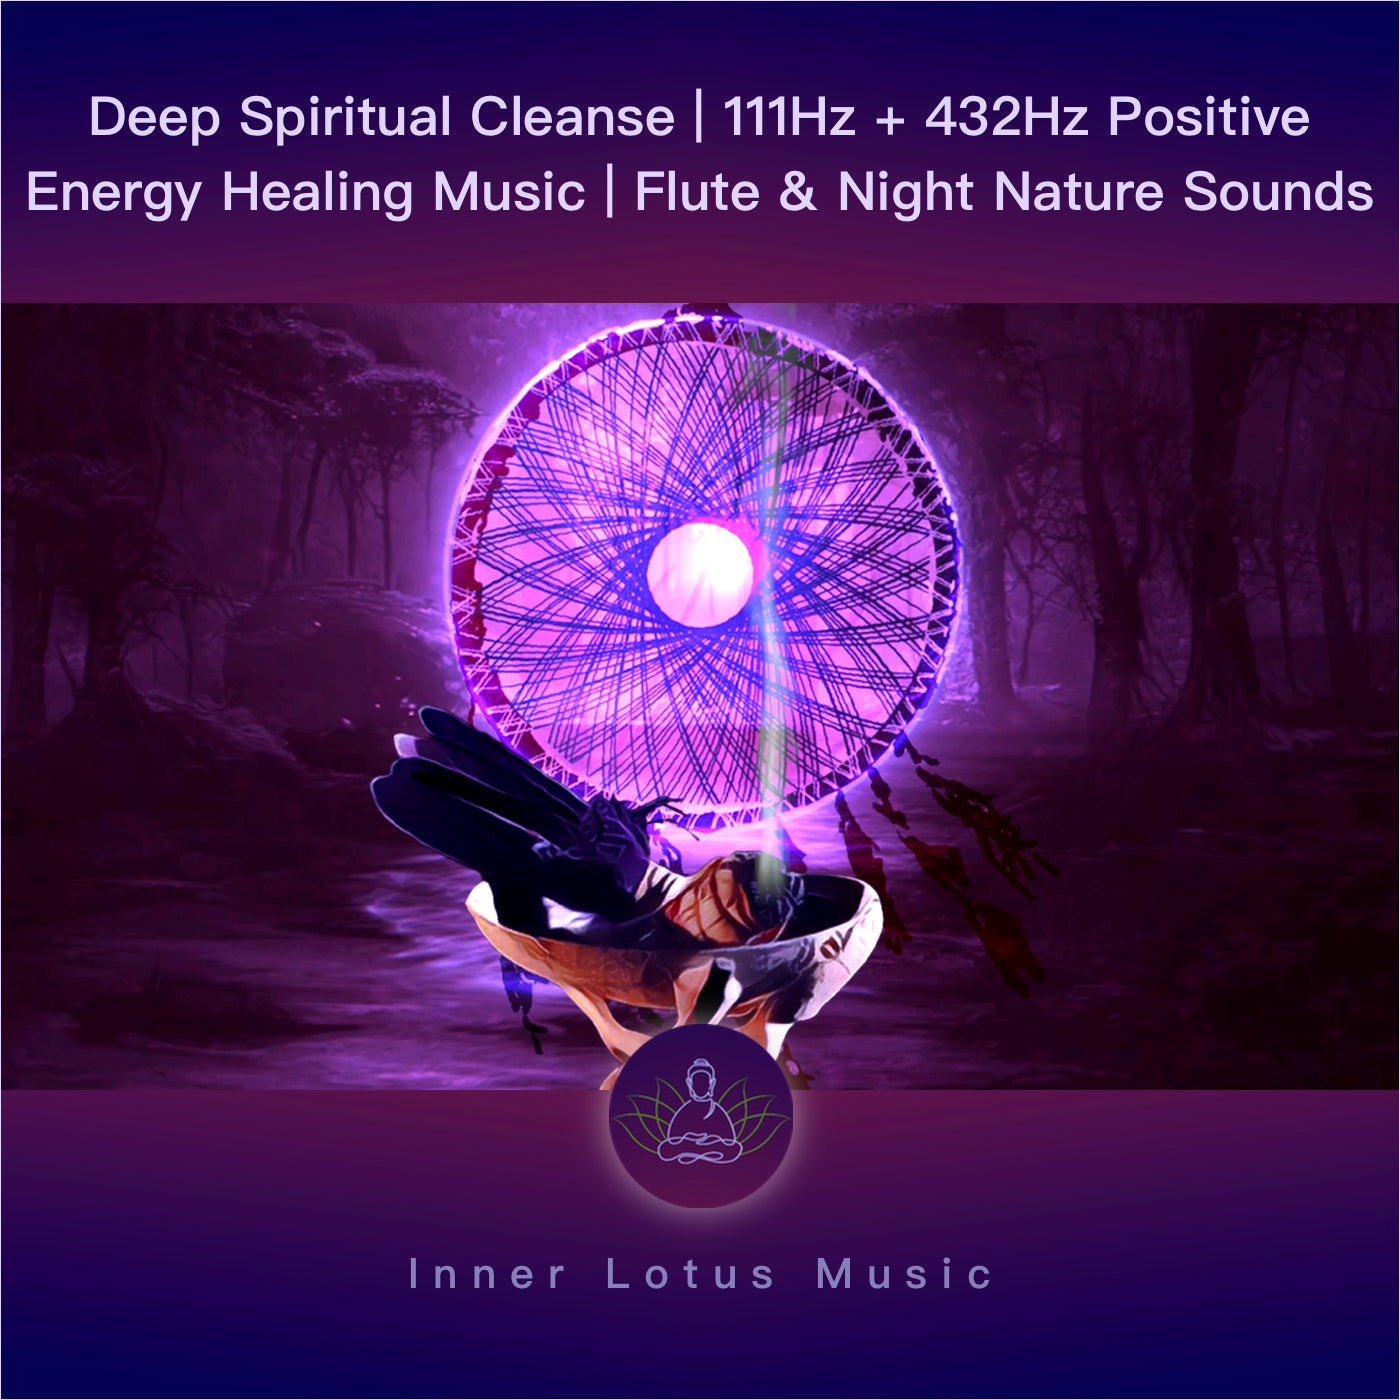 Deep Spiritual Cleanse | 111Hz + 432Hz Positive Energy Healing Music | Flute & Night Nature Sounds